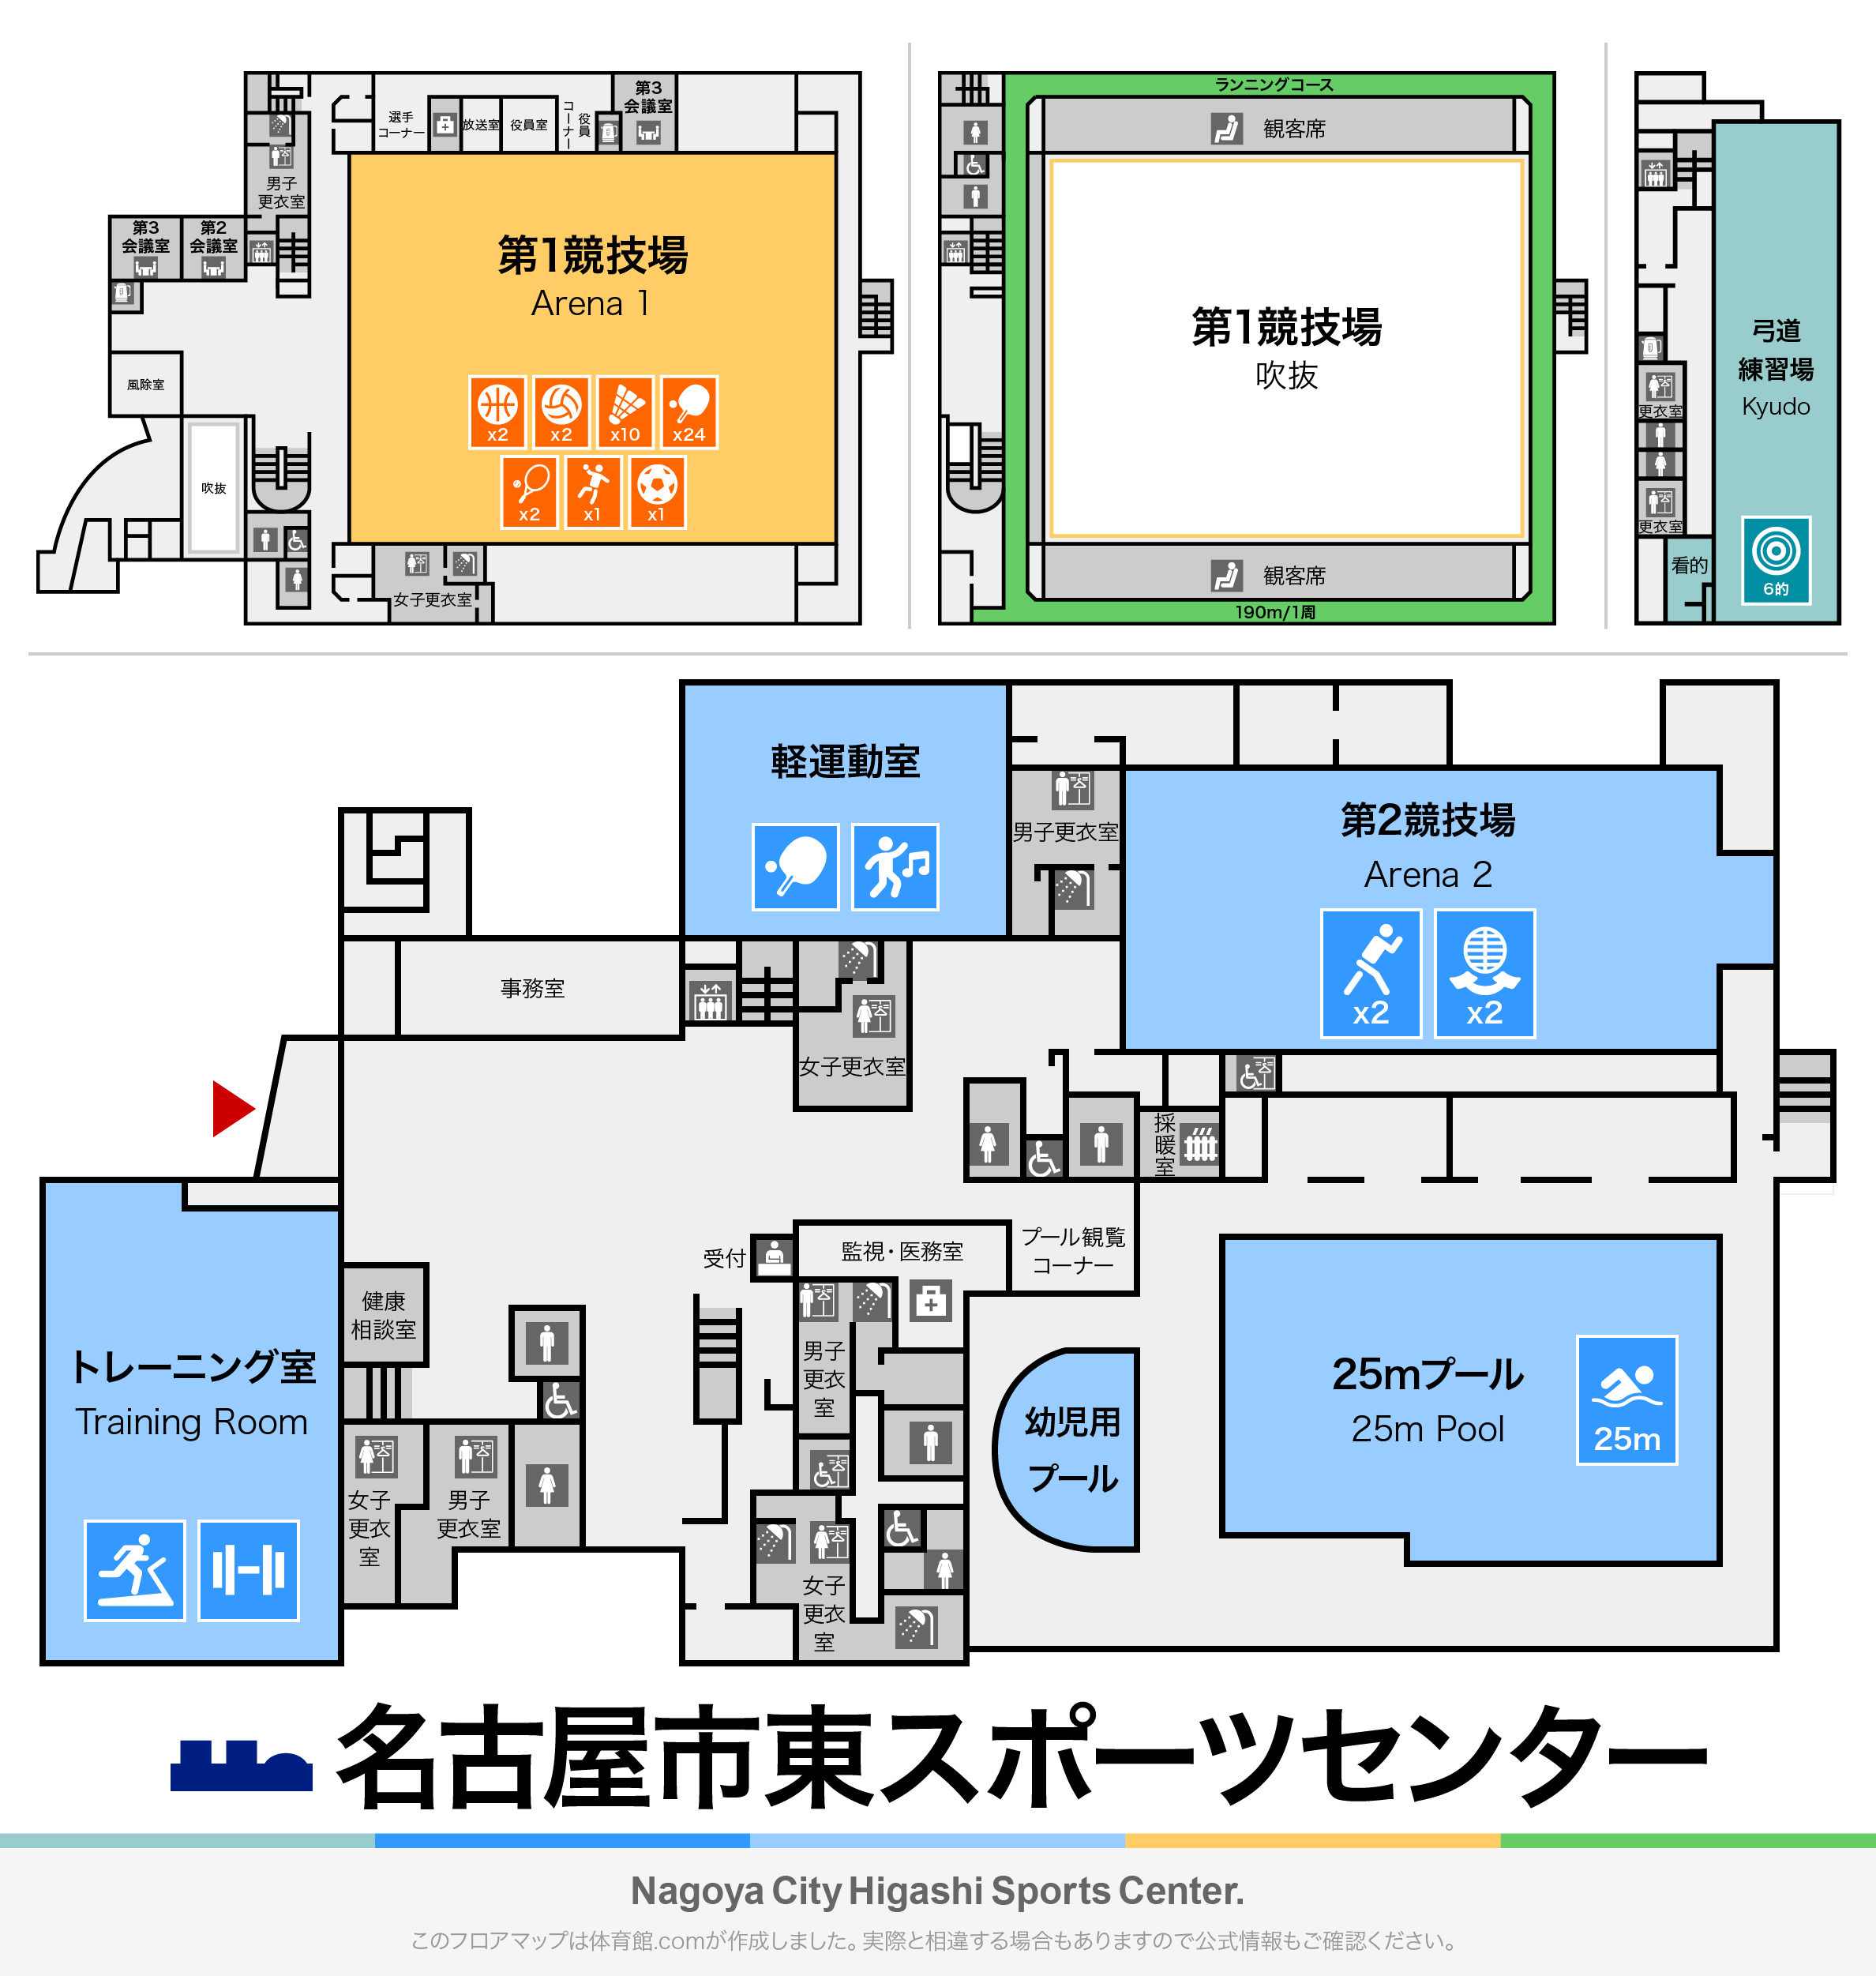 名古屋市東スポーツセンターのフロアマップ